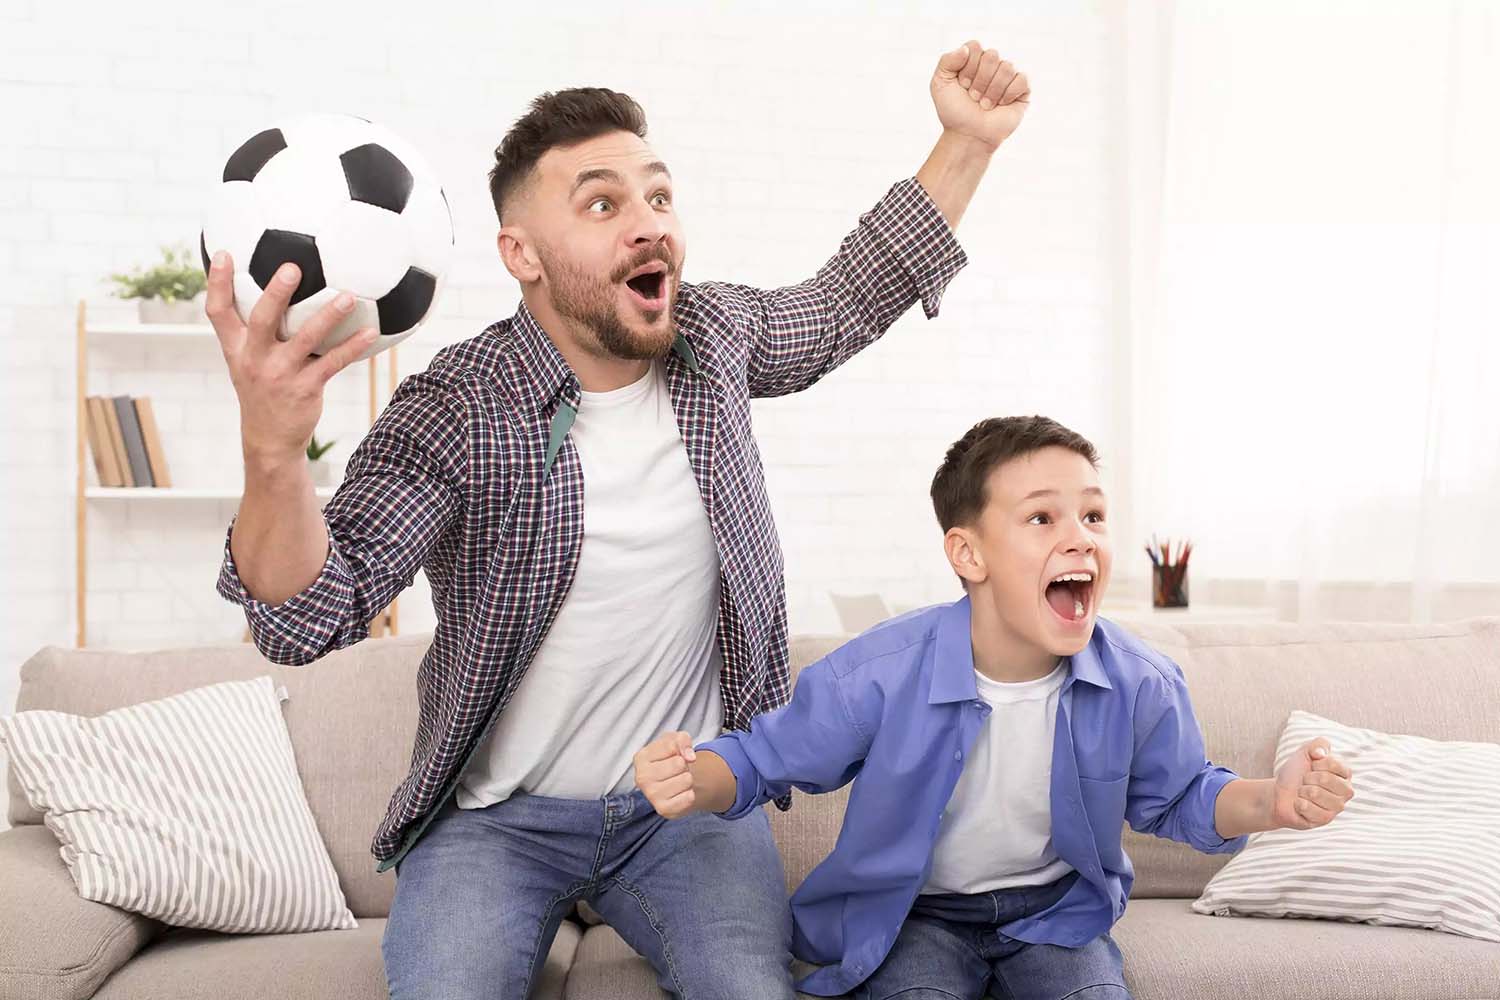 Padre emocionado mira fútbol con su hijo